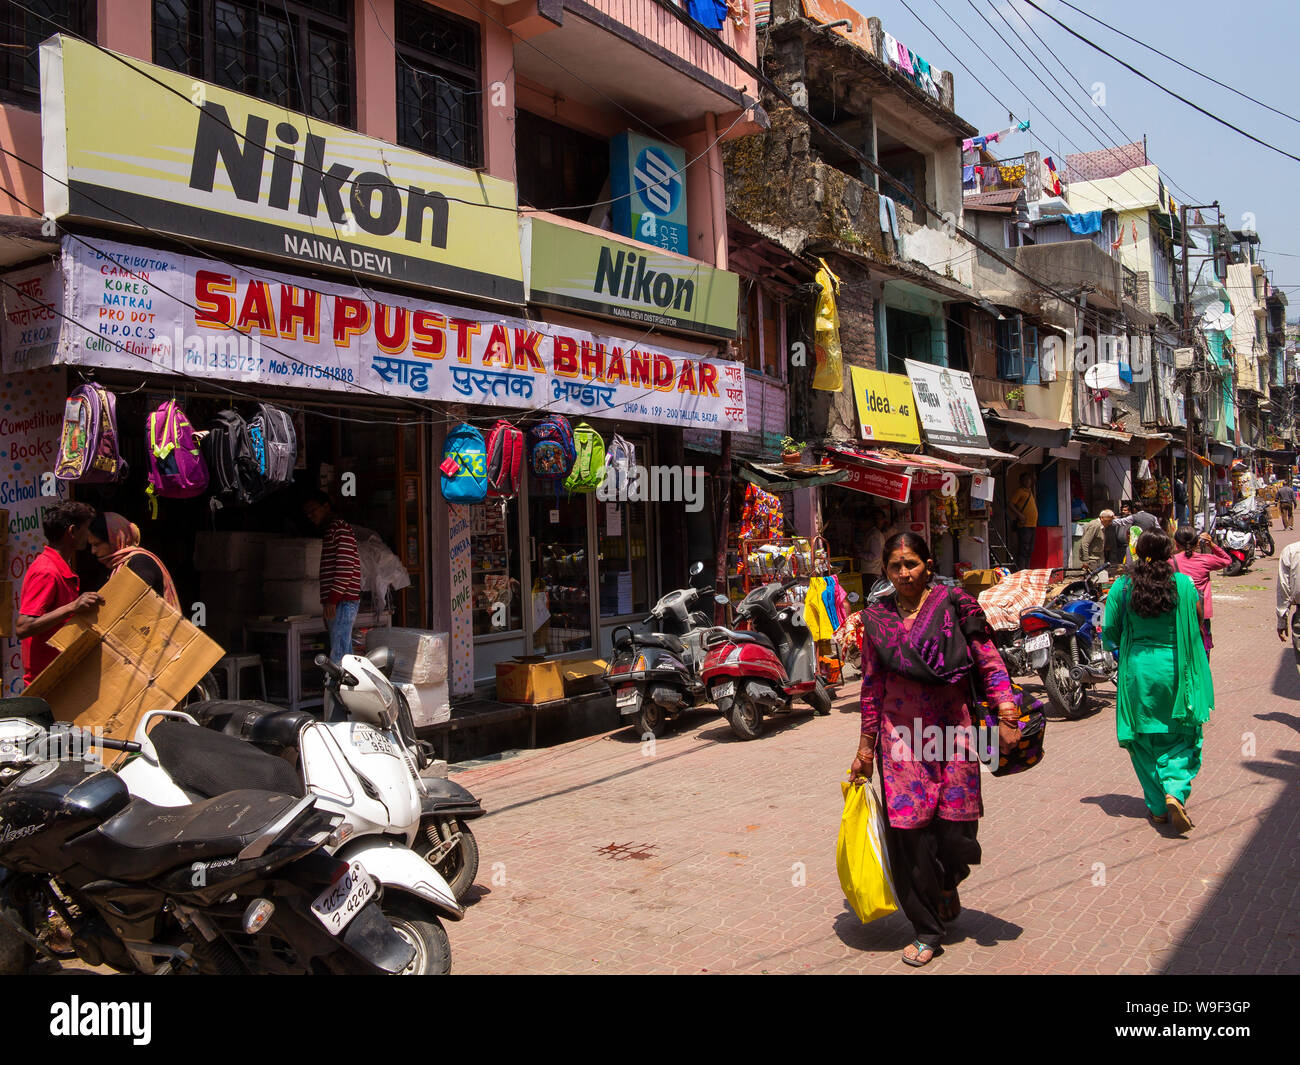 Street scene at Nainital Main Bazar at Talital area, Nainital, Uttarakhand, India Stock Photo